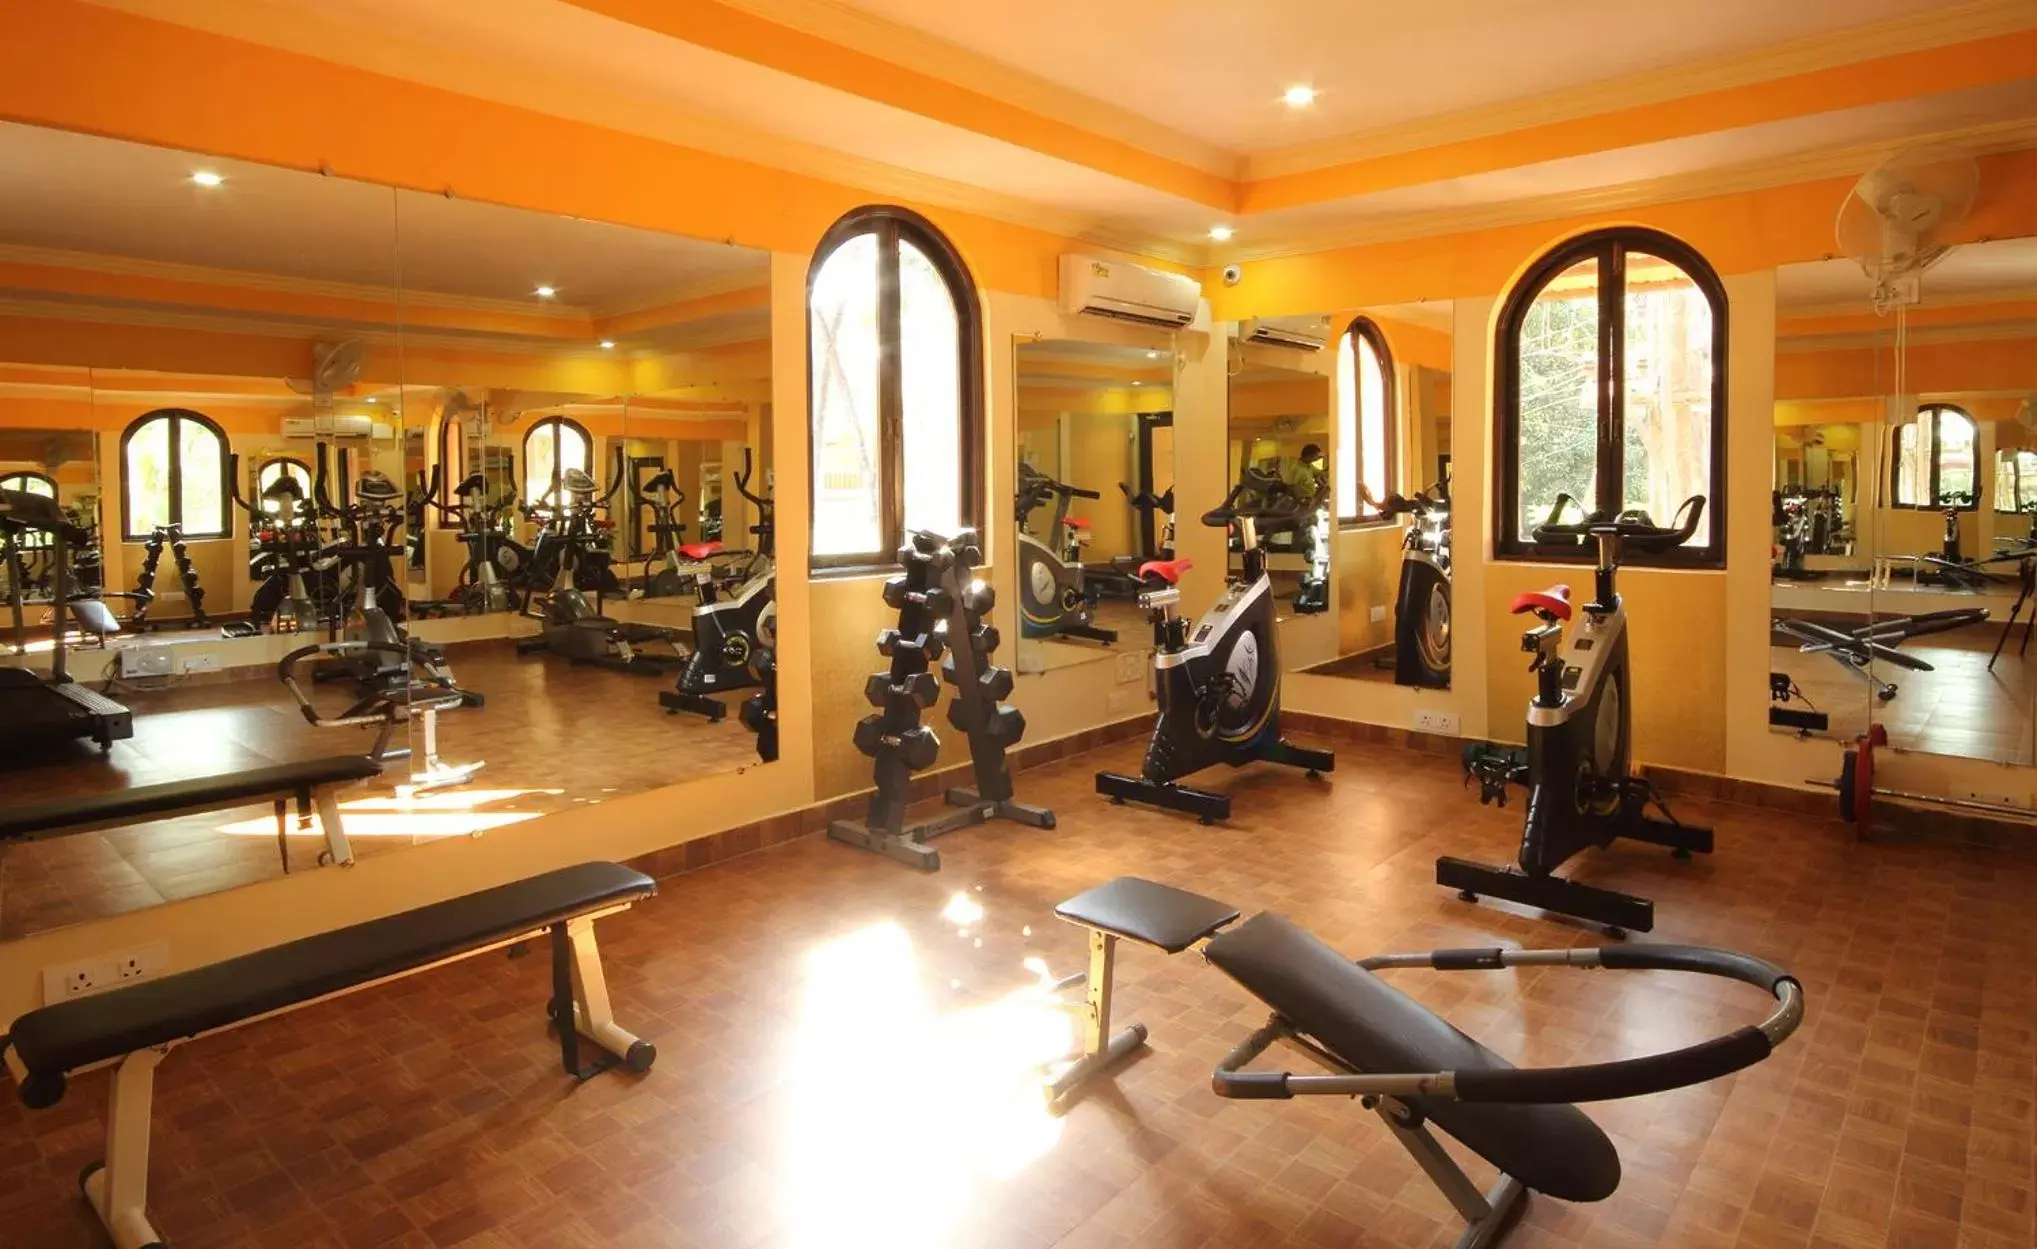 Fitness centre/facilities, Fitness Center/Facilities in Resort Terra Paraiso